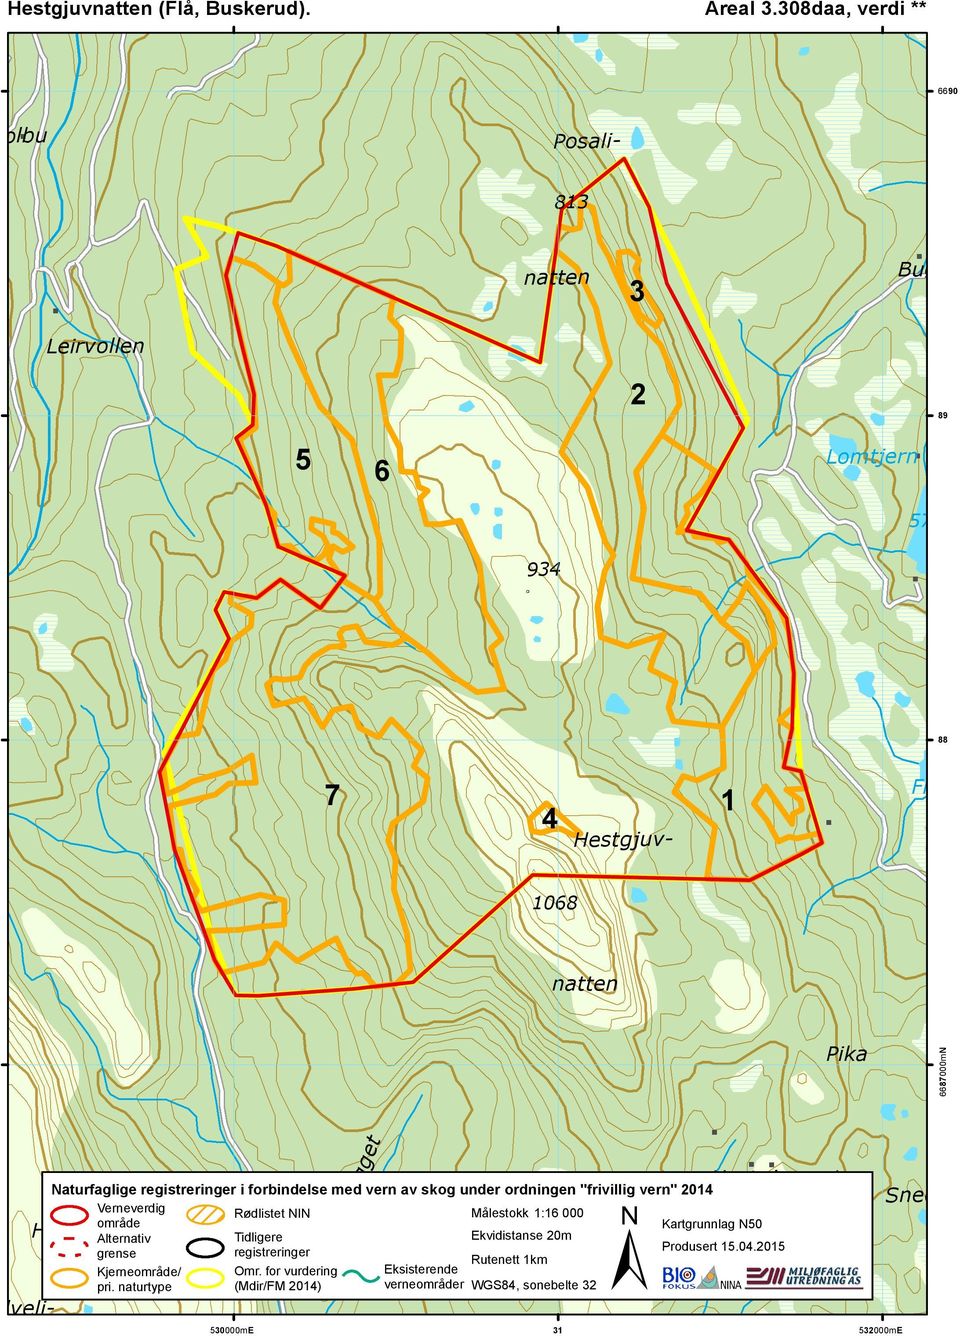 Kalveli- Naturfaglige registreringer i forbindelse med vern av skog under ordningen "frivillig vern" 2014 Verneverdig Rødlistet NIN Målestokk 1:16 000 område